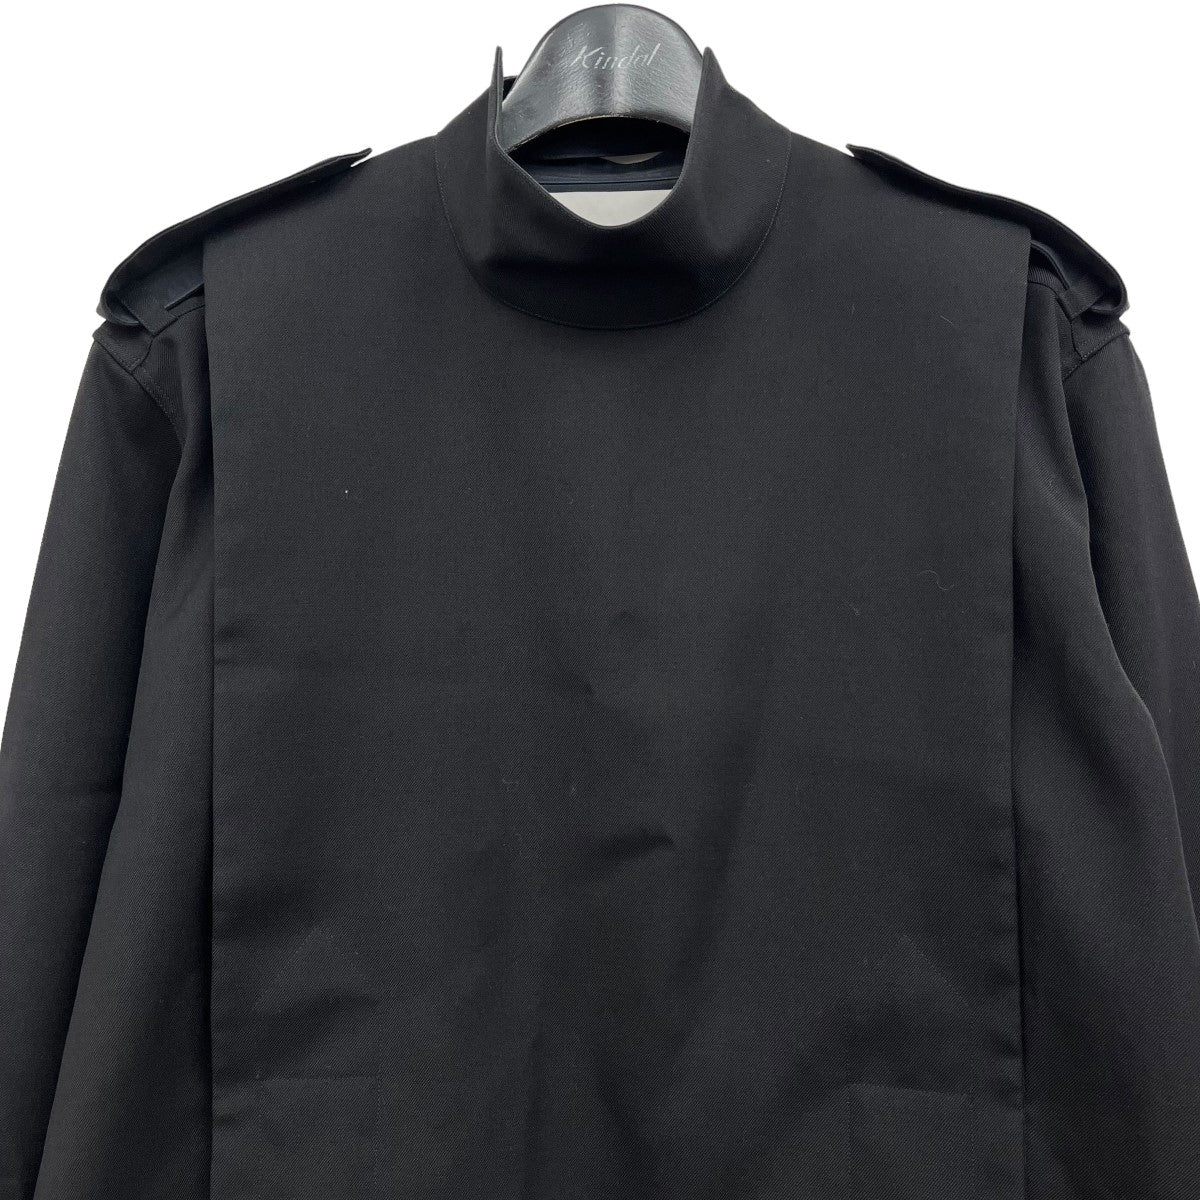 JIL SANDER(ジルサンダー) ウールシャツ JSMR742537 ブラック サイズ 